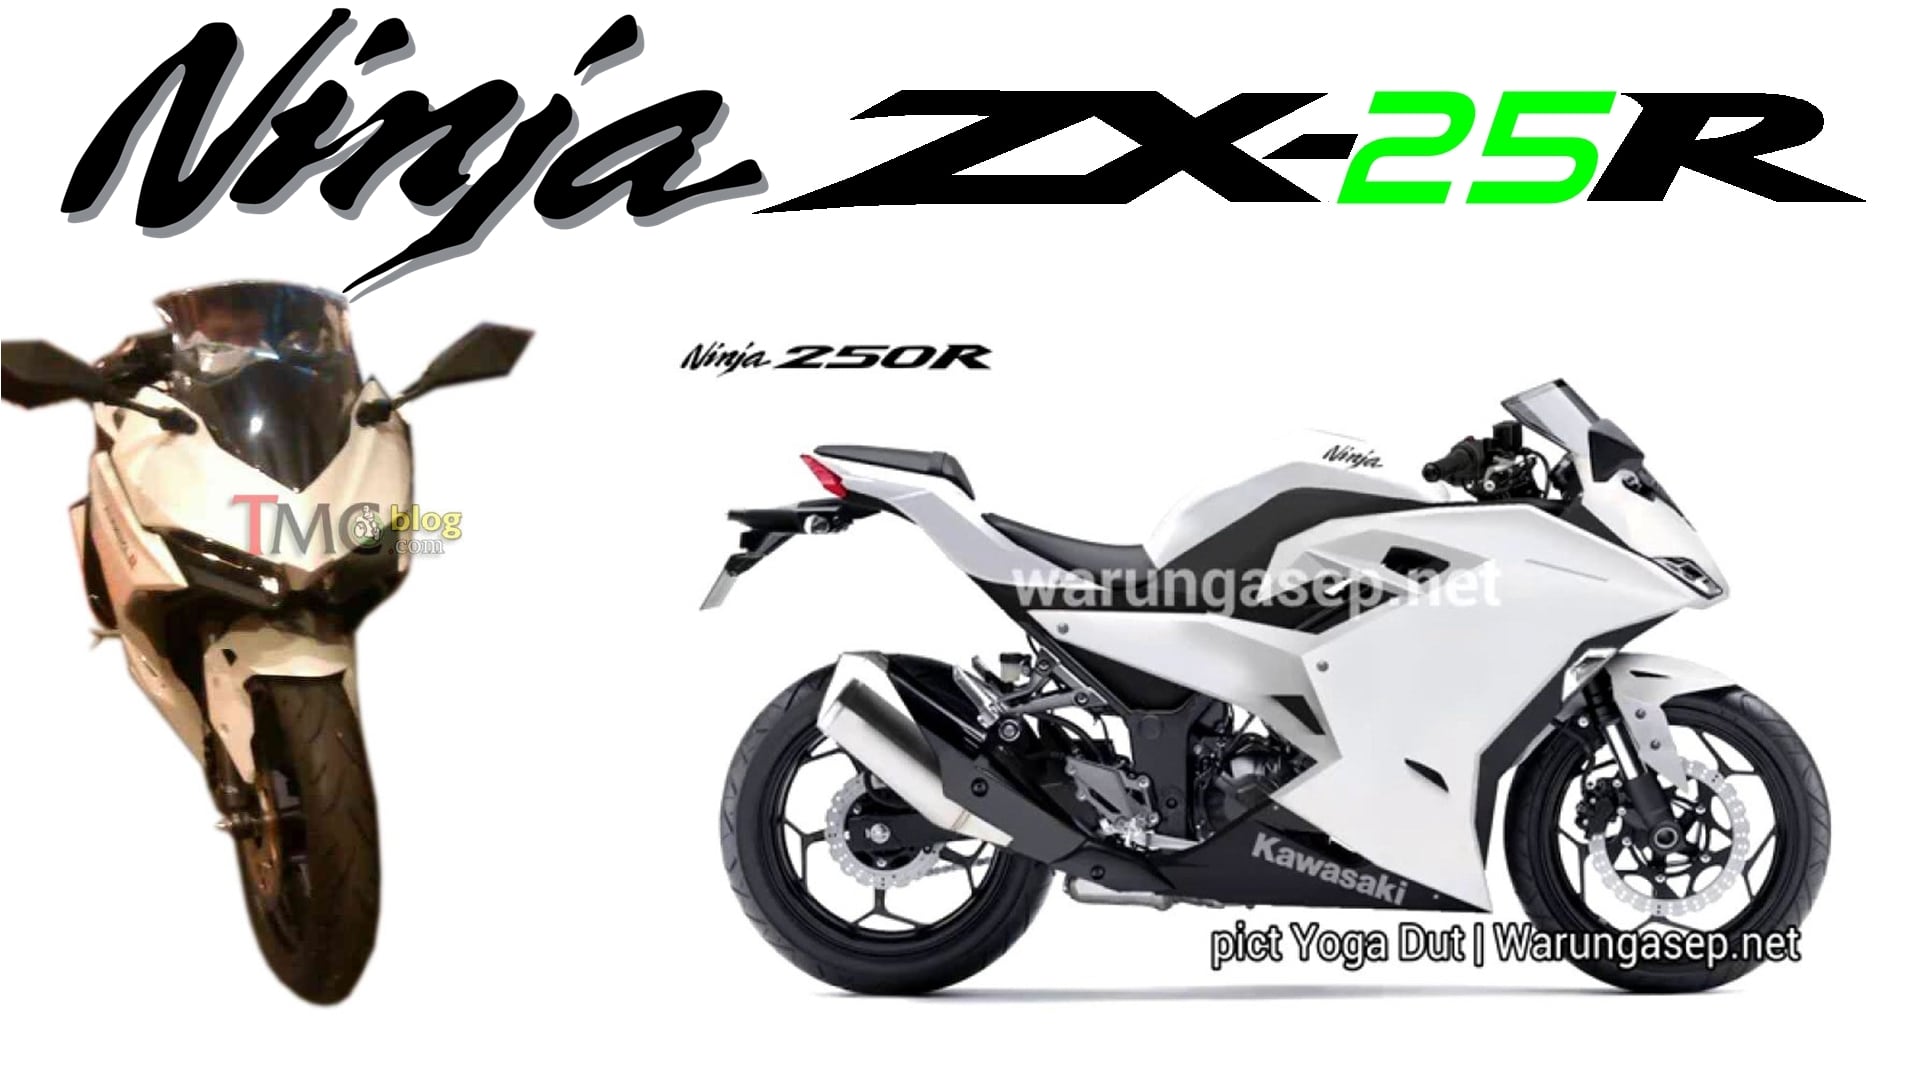 Kawasaki Ninja Zx25r Price In Usa